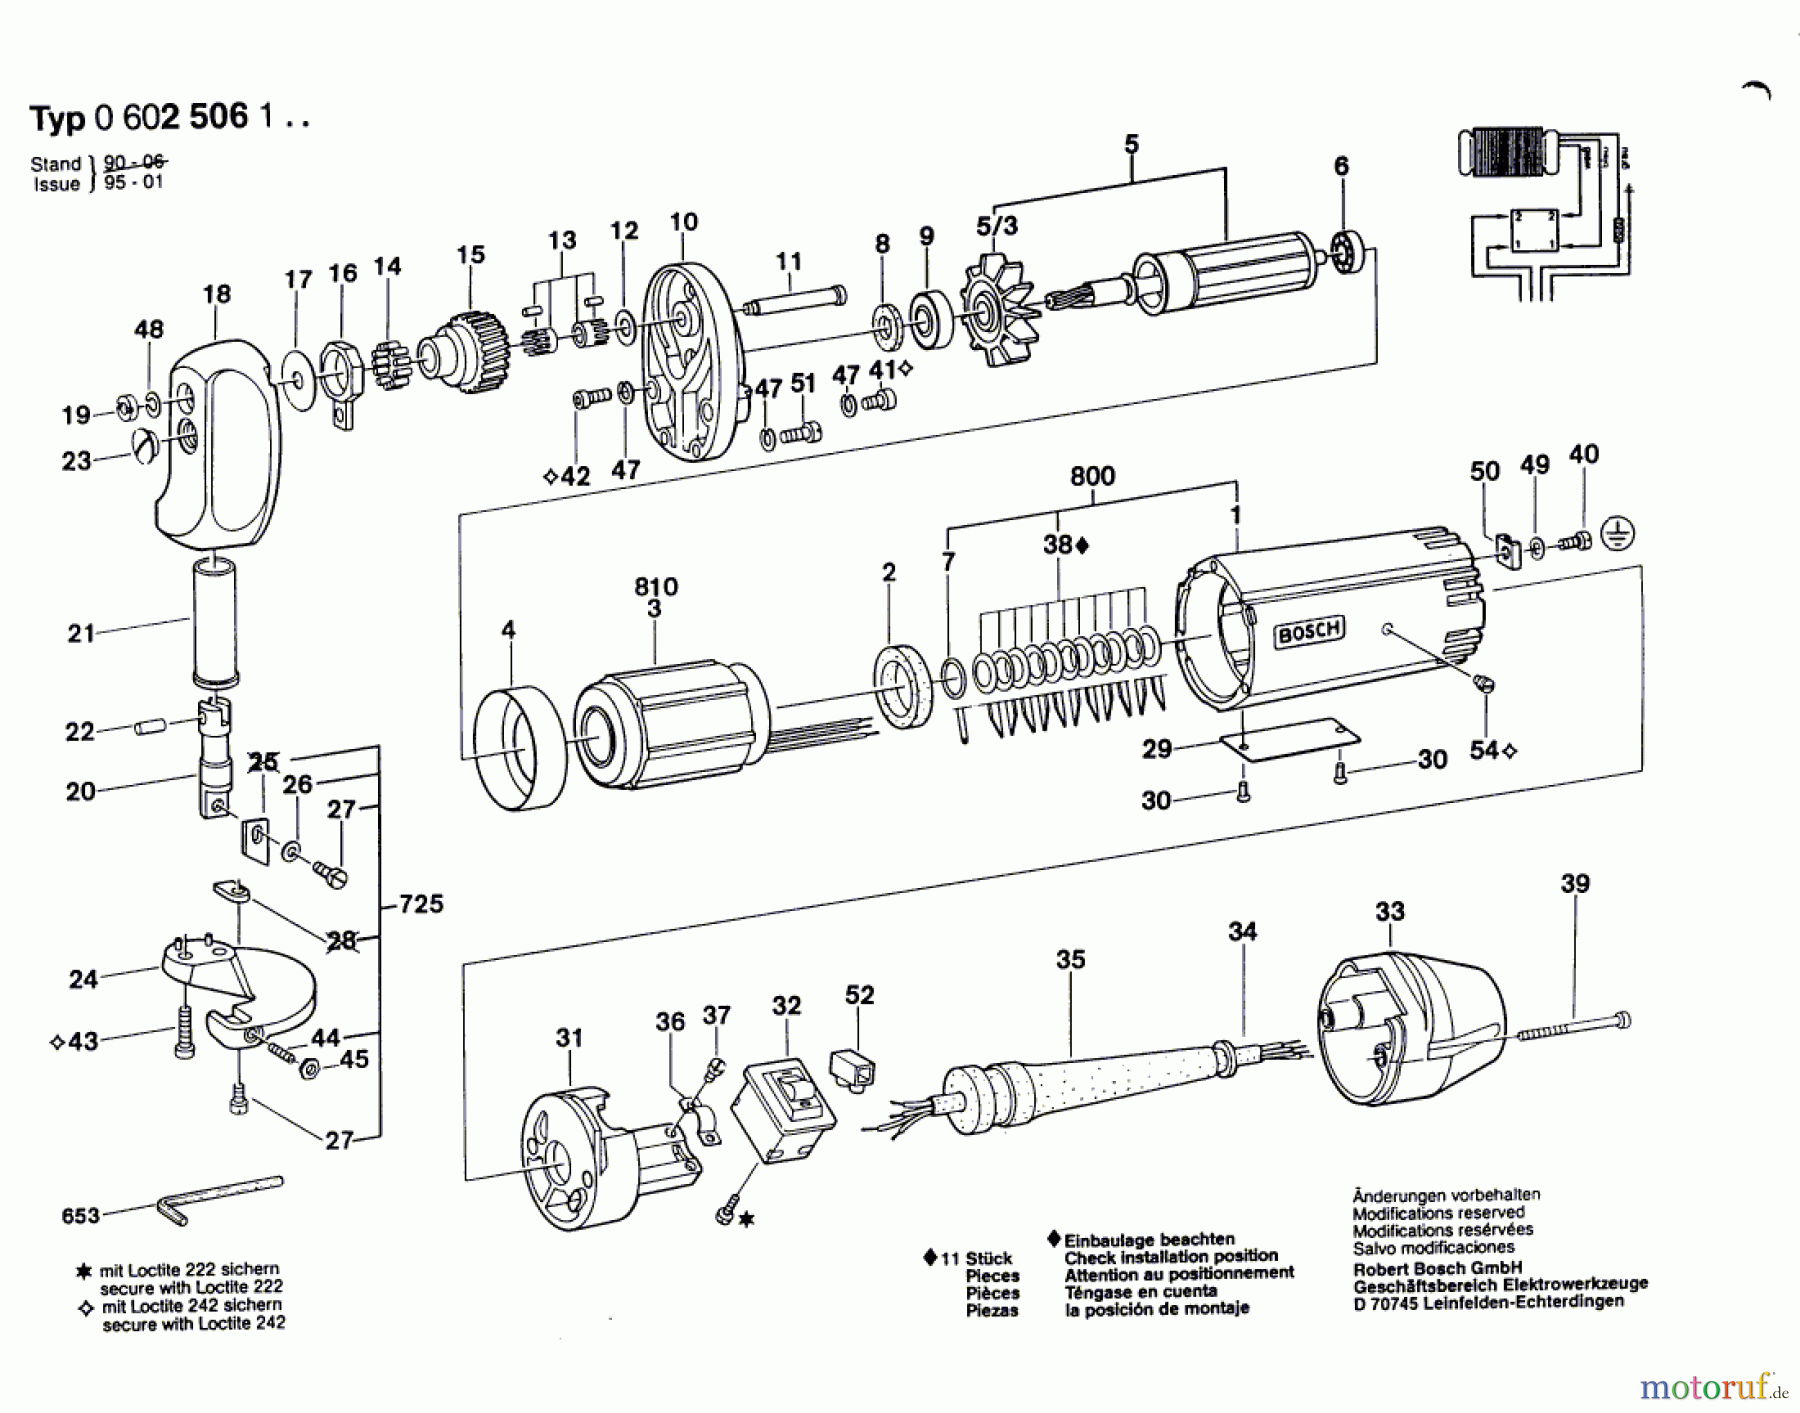  Bosch Werkzeug Blechschere GR.55 Seite 1